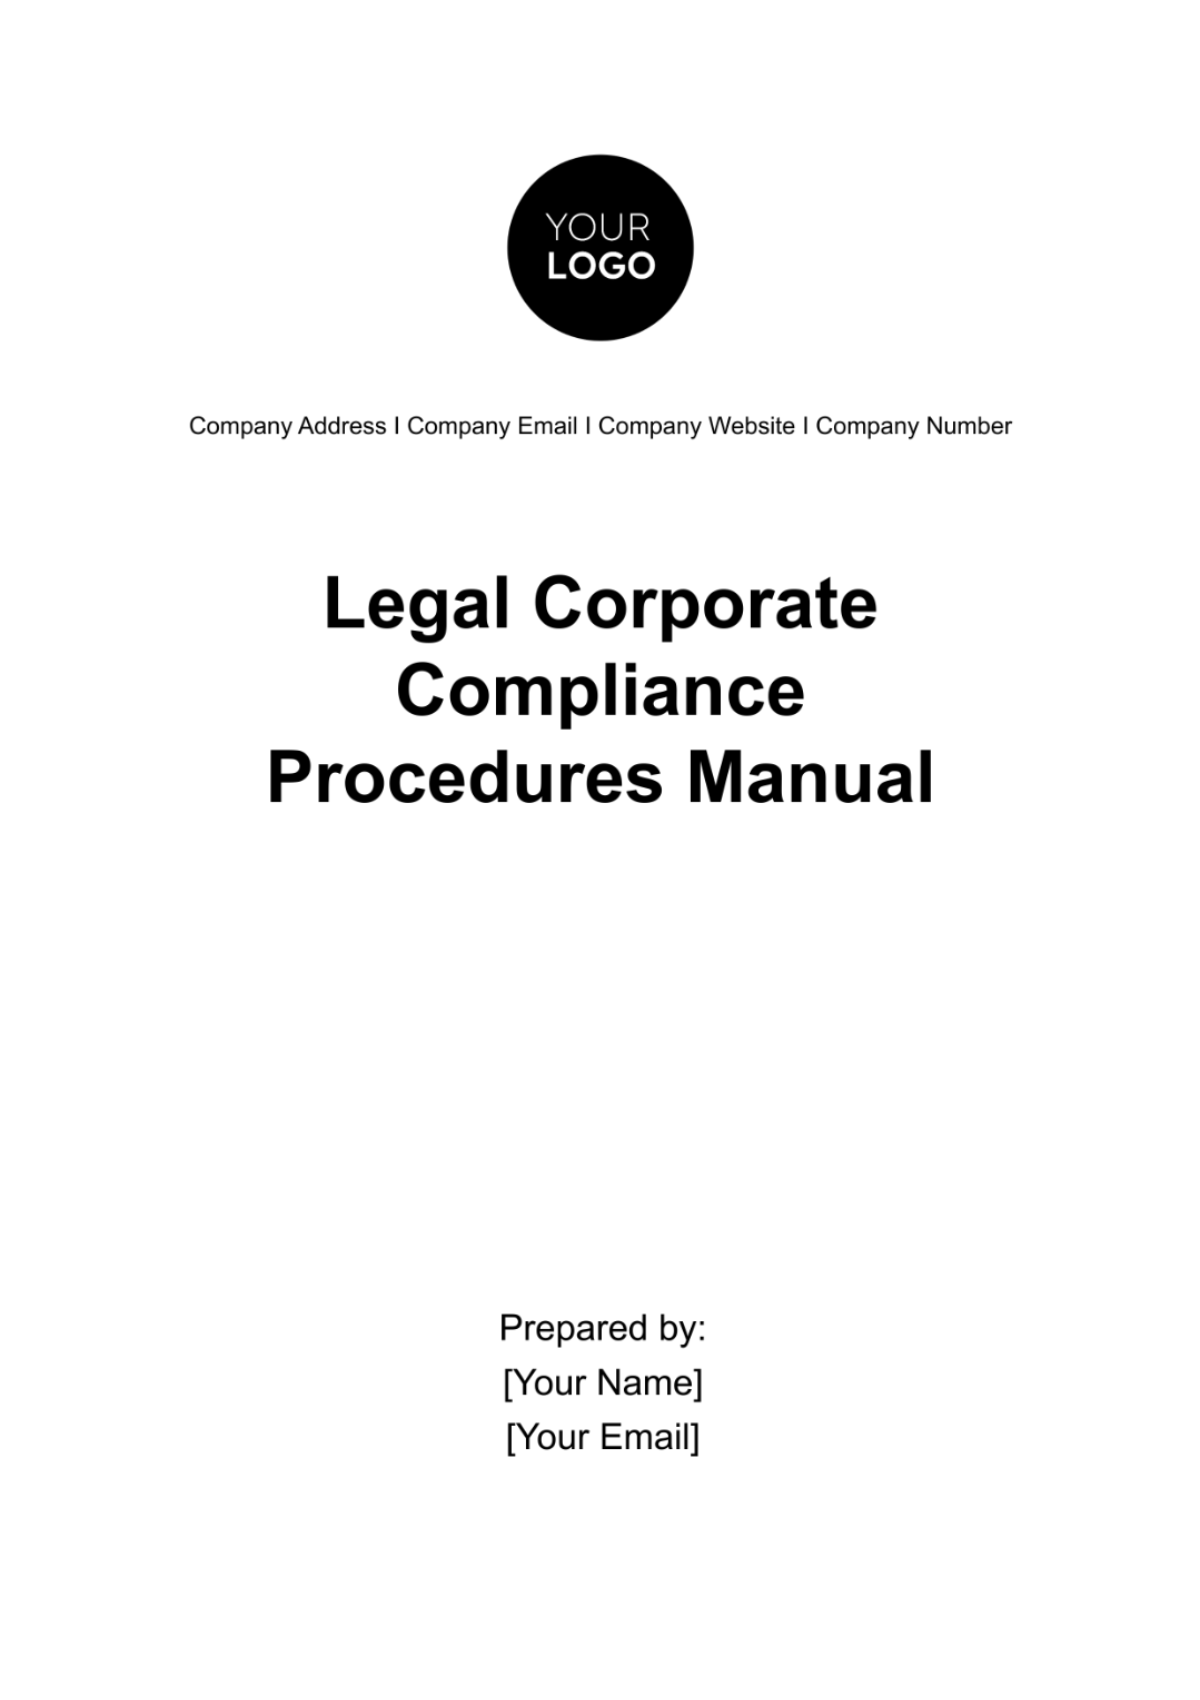 Legal Corporate Compliance Procedures Manual Template